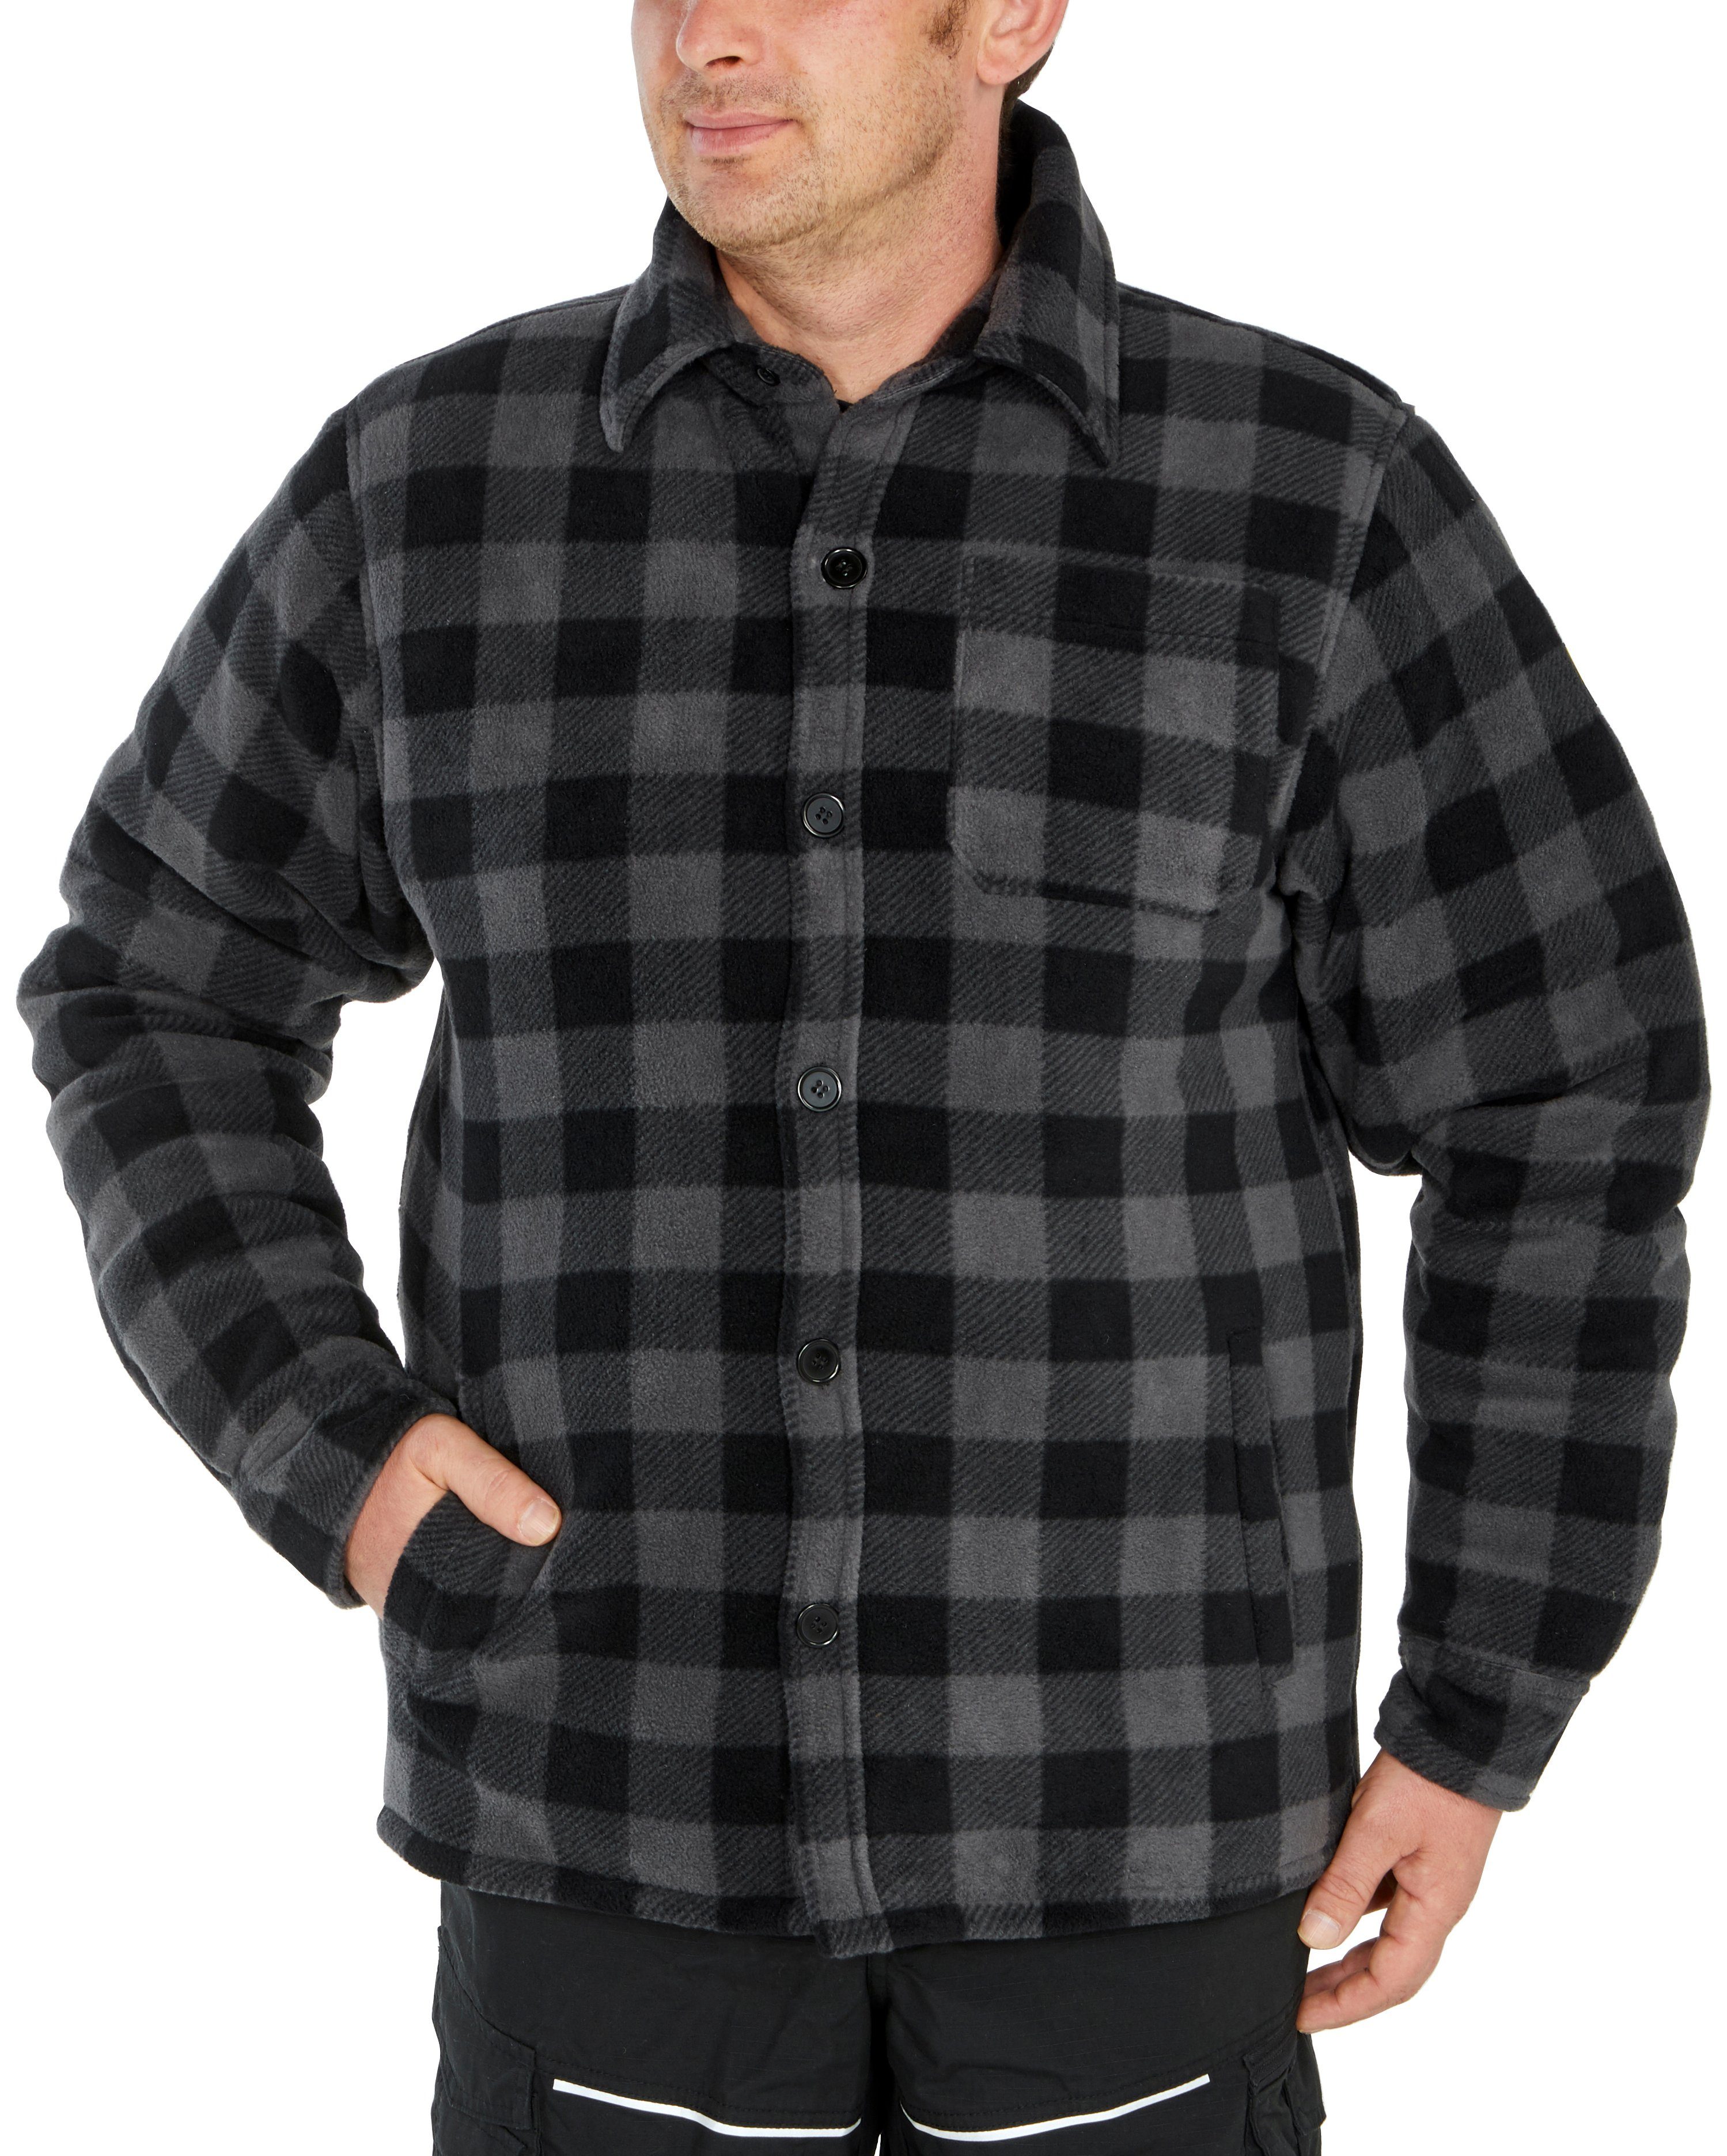 Northern Country Flanellhemd warm 5 verlängertem Flanellstoff Jacke zugeknöpft Rücken, Hemd Taschen, tragen) offen zu oder (als mit grau-schwarz gefüttert, mit